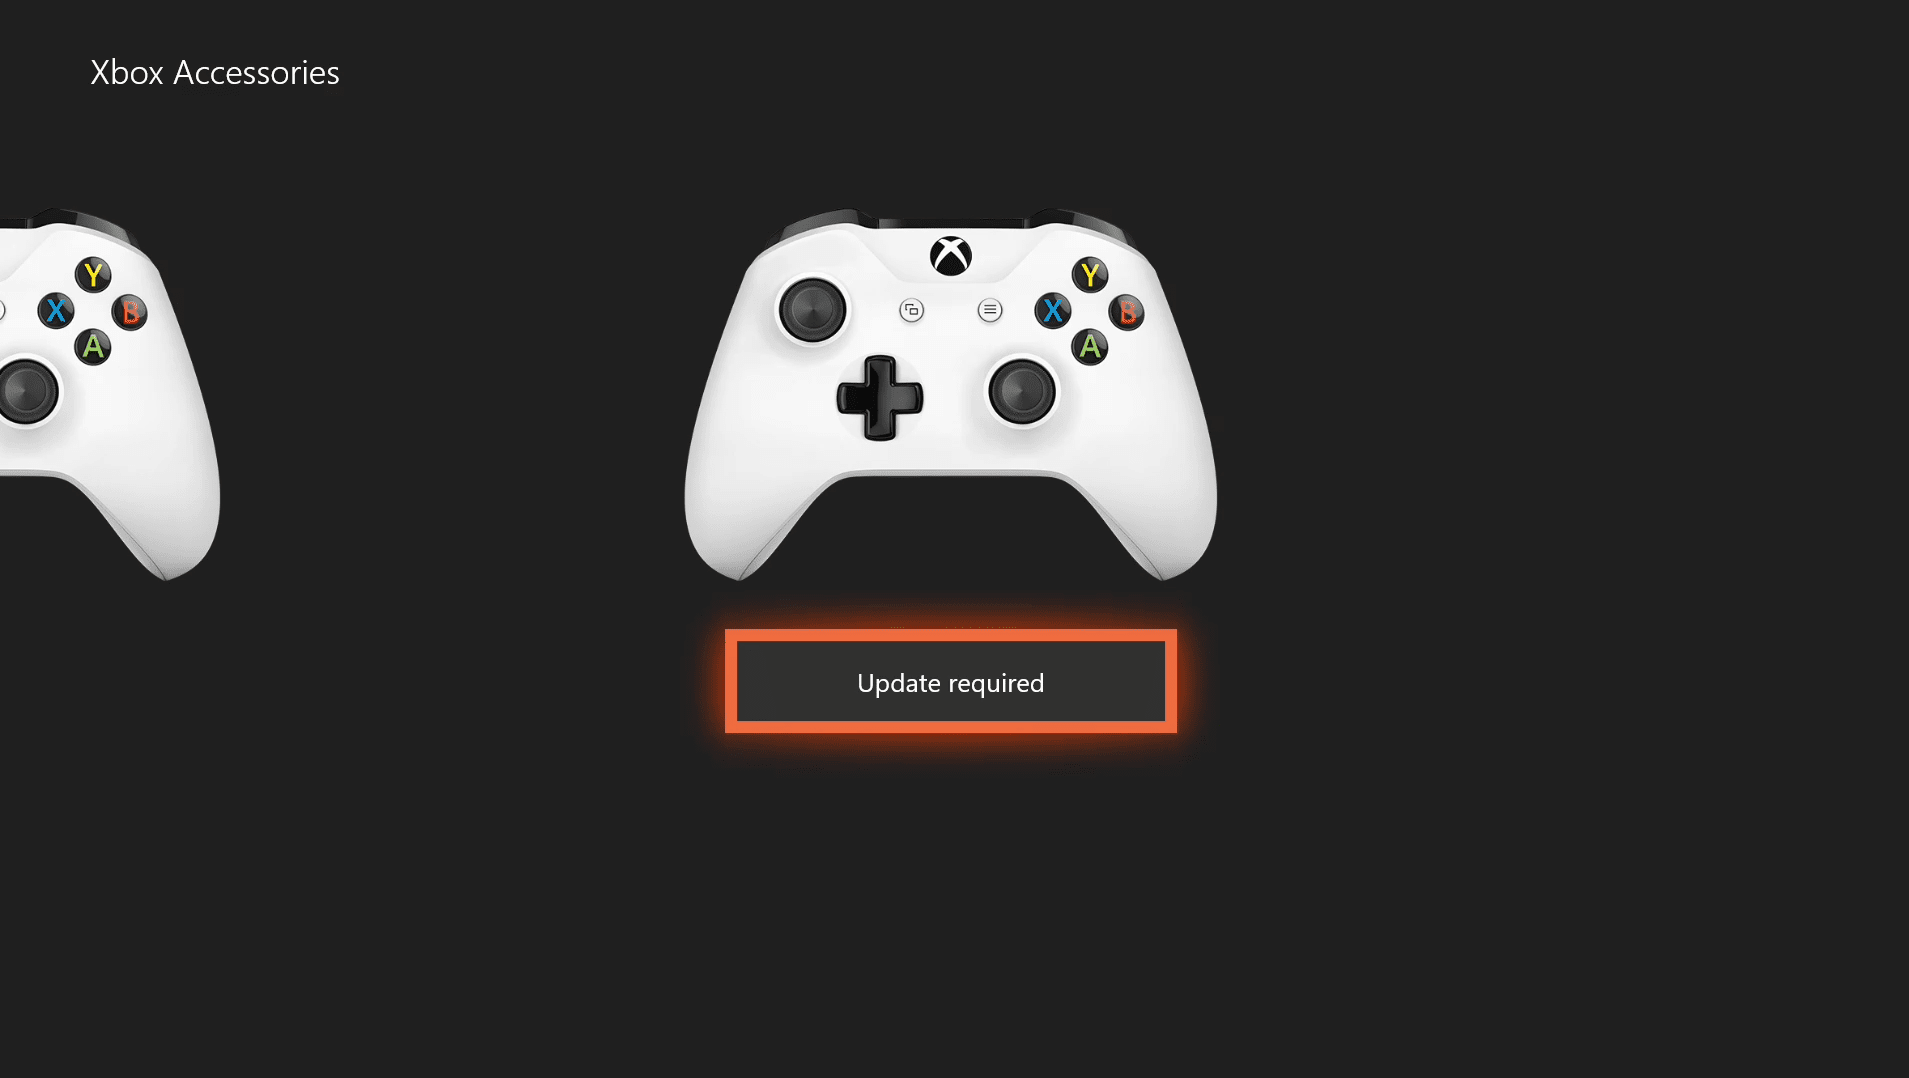 Снимок экрана контроллера Xbox One, требующего обновления.